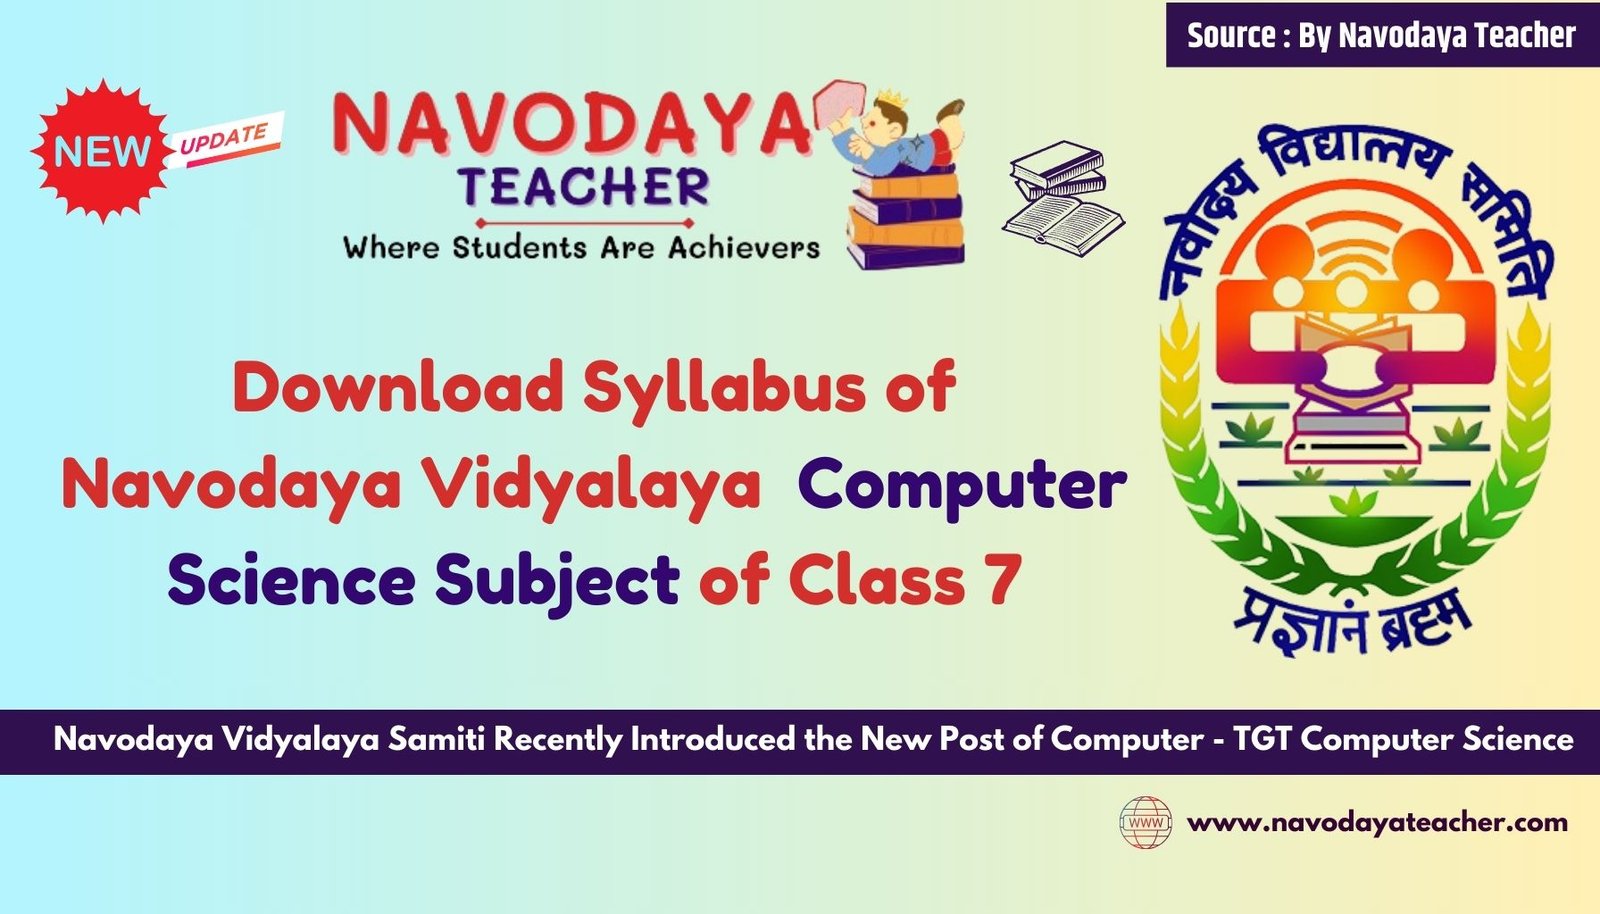 Download Syllabus of Navodaya Vidyalaya Computer Science Subject of Class 7